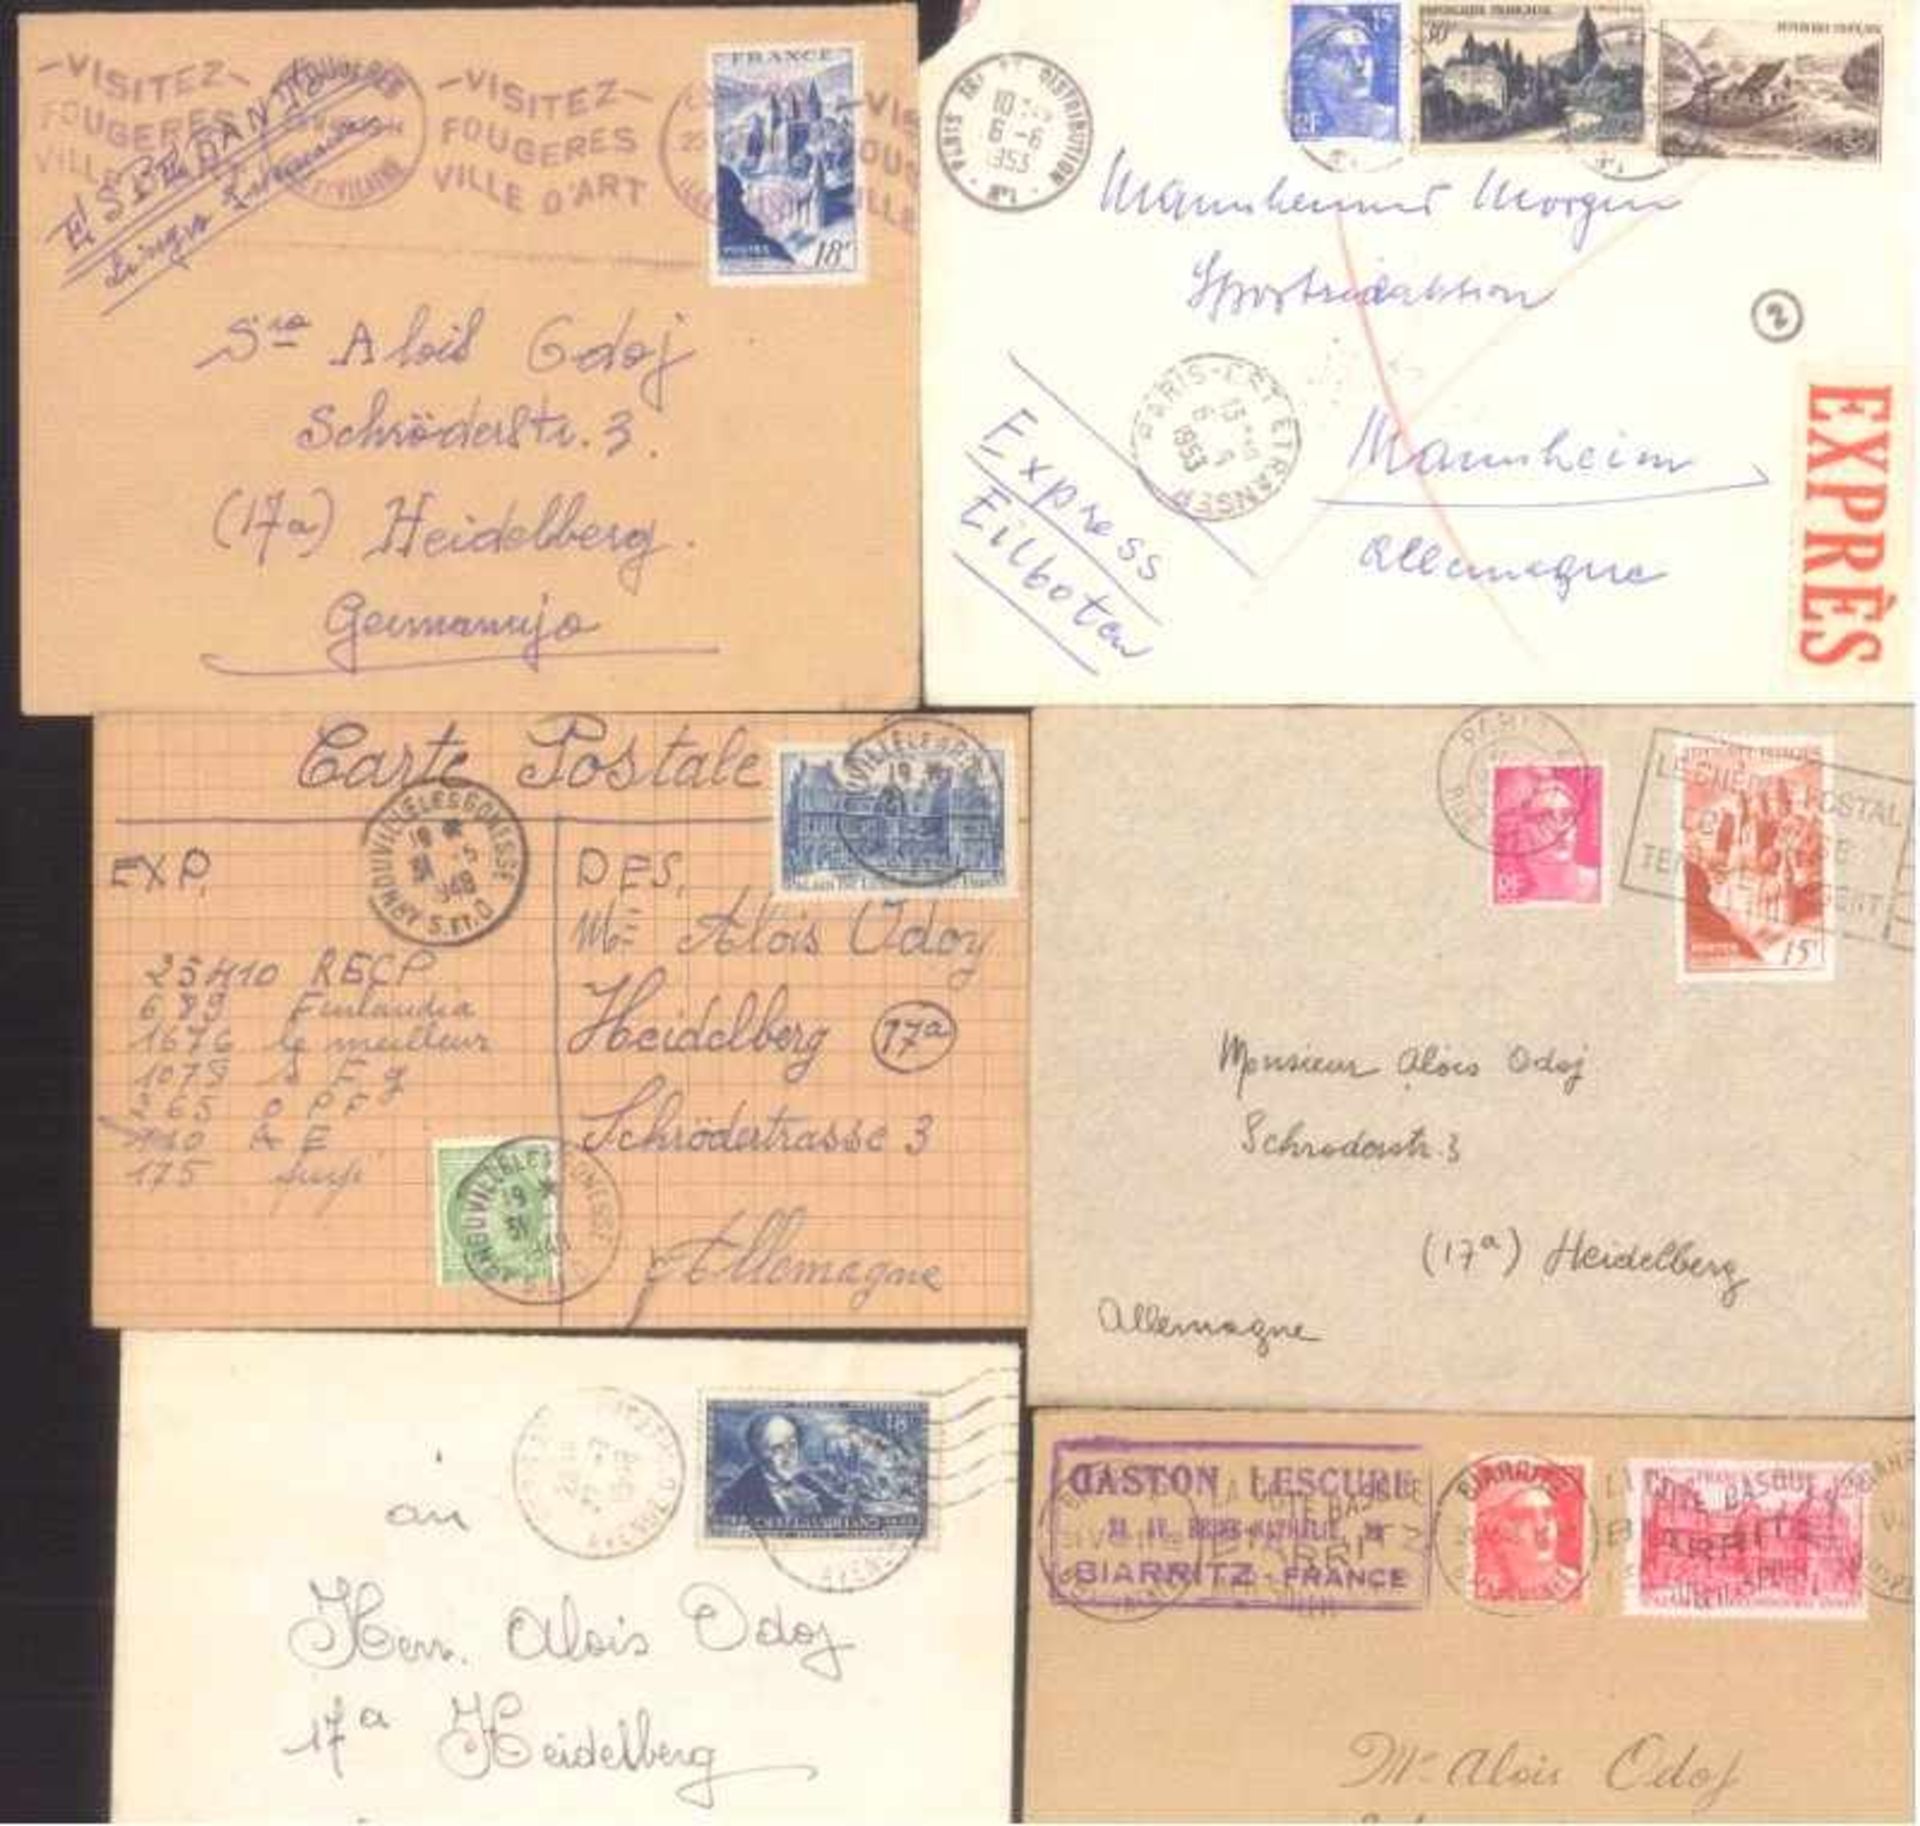 FRANKREICH 1948-1955, Belegelot, mit Luftpost!Lot von 23 Belegen aus 1948-1955. Fast alle nach - Bild 3 aus 4